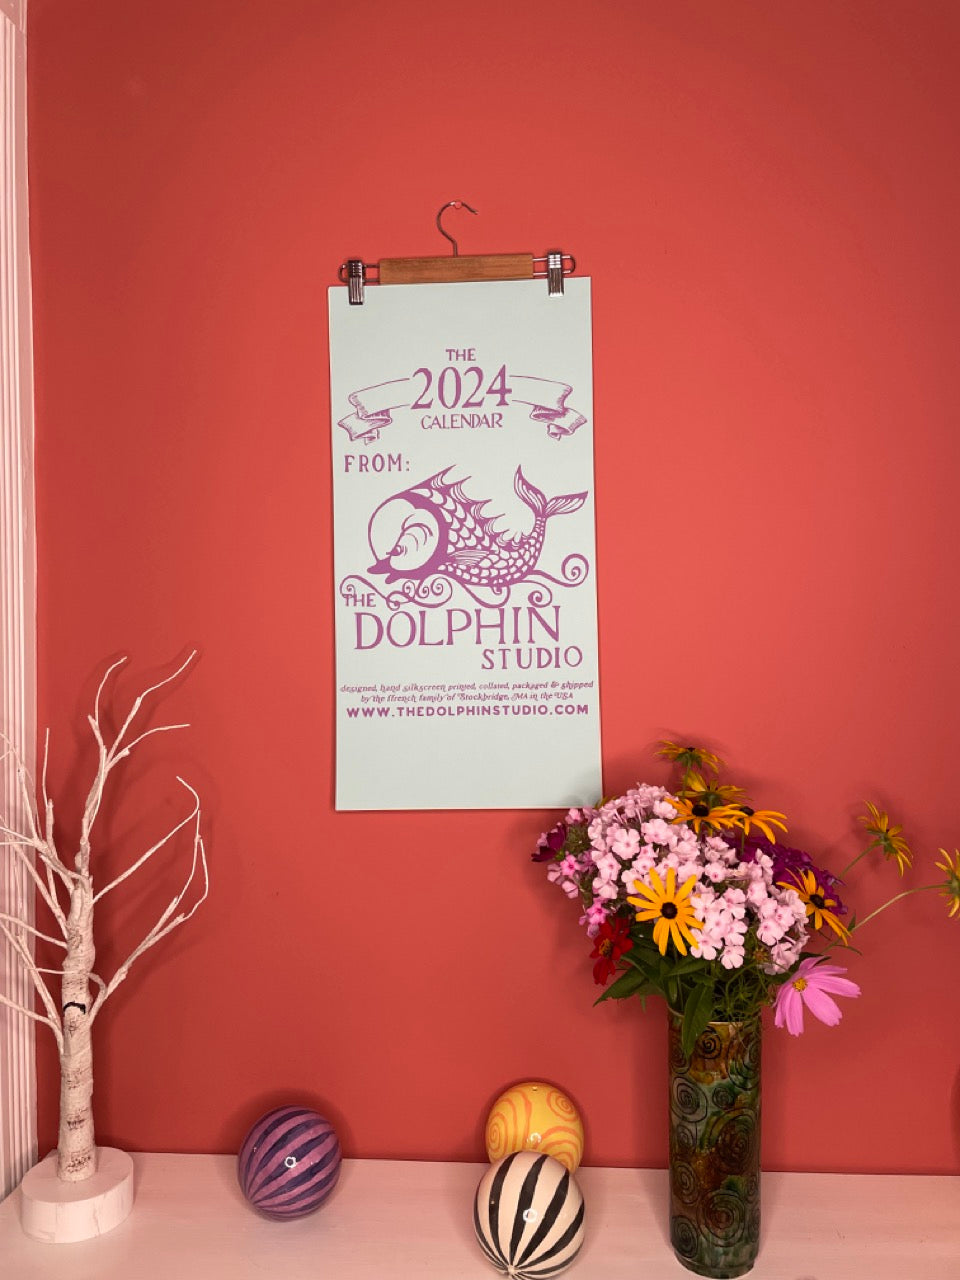 PRE-ORDER 2025 Dolphin Studio Calendar